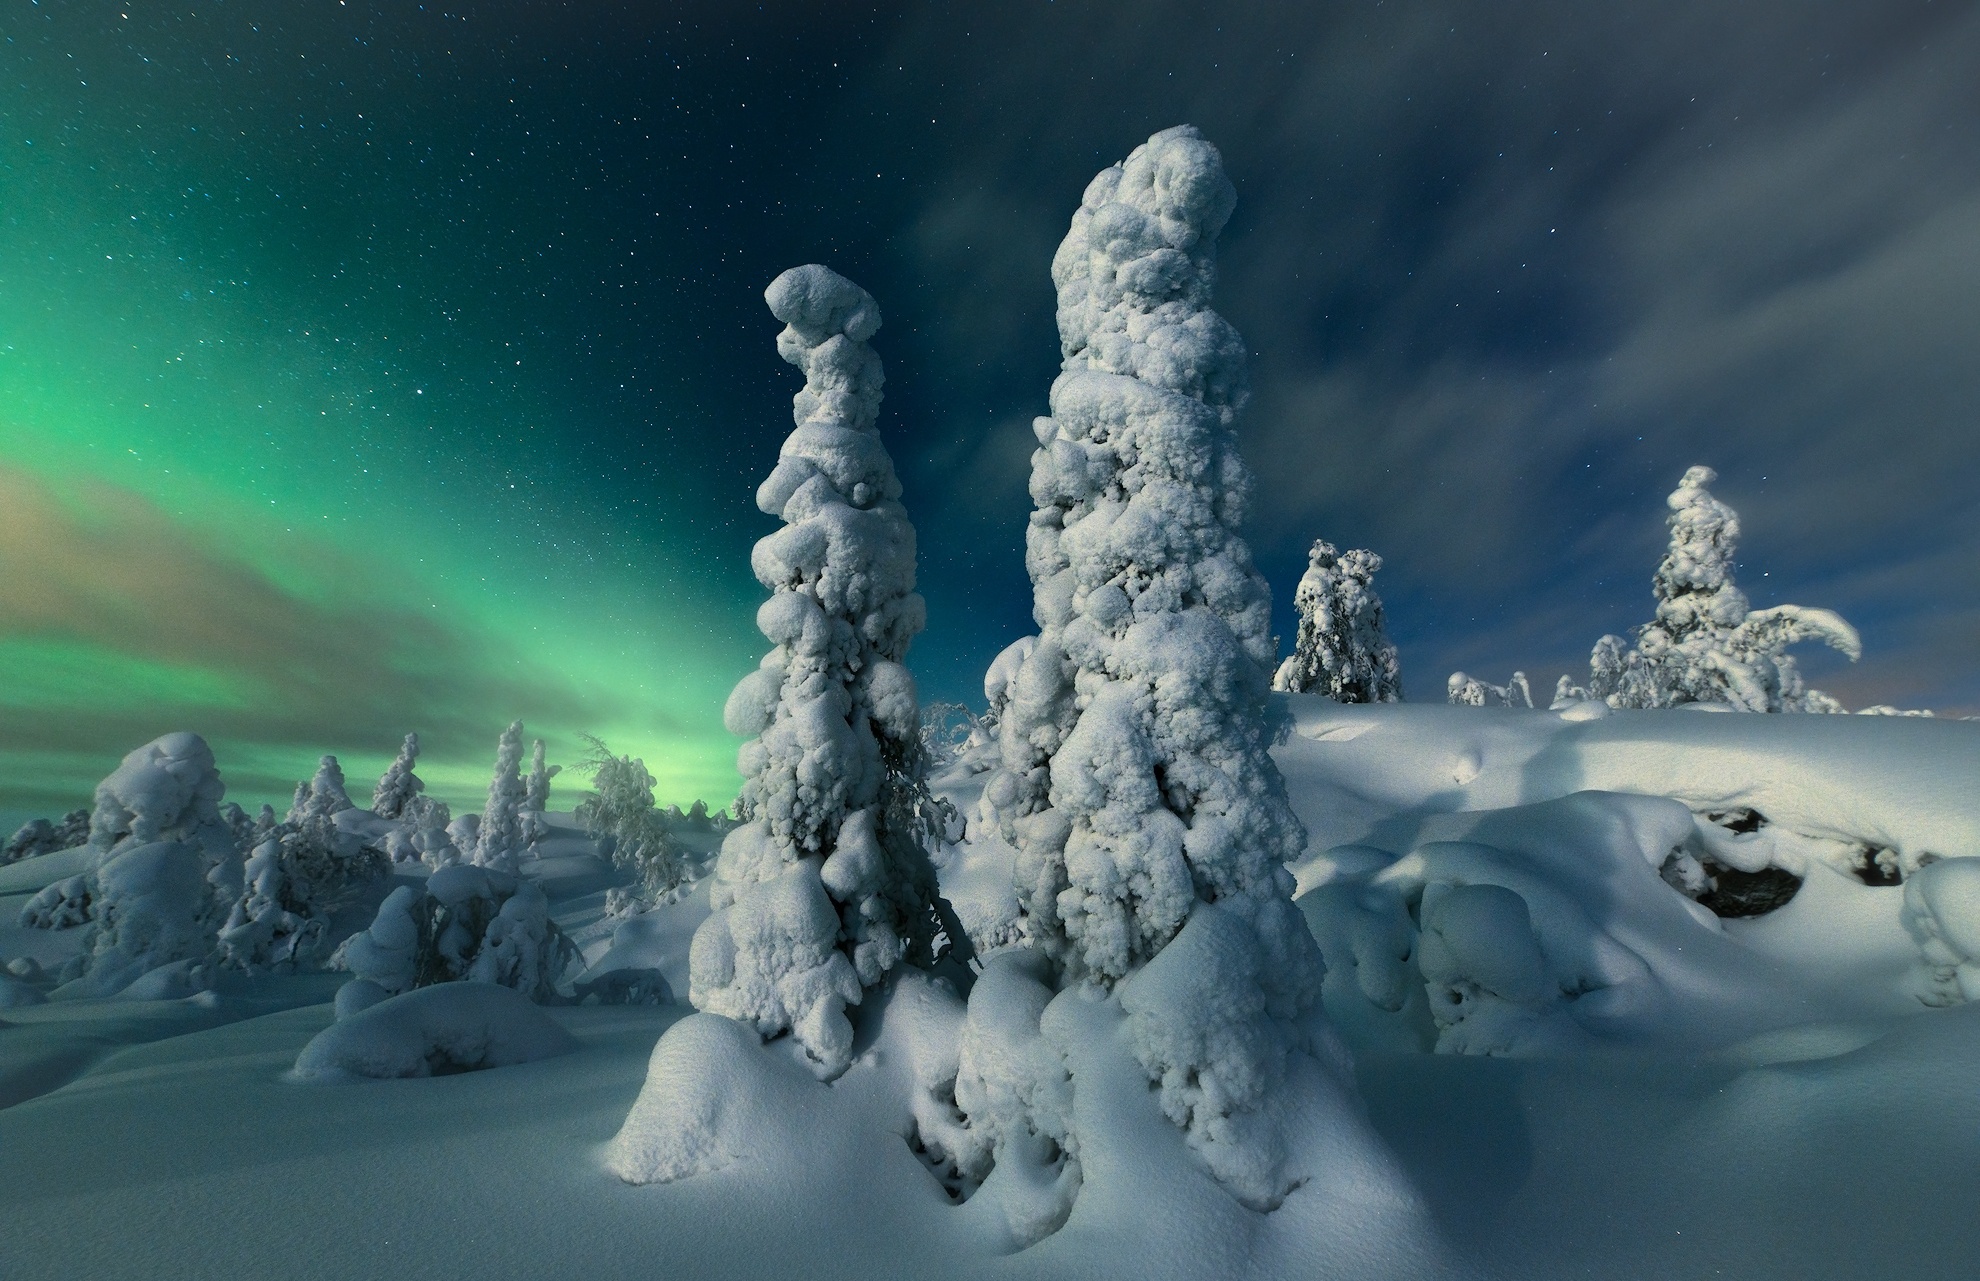 Скачать обои бесплатно Зима, Природа, Небо, Снег, Северное Сияние, Земля/природа картинка на рабочий стол ПК